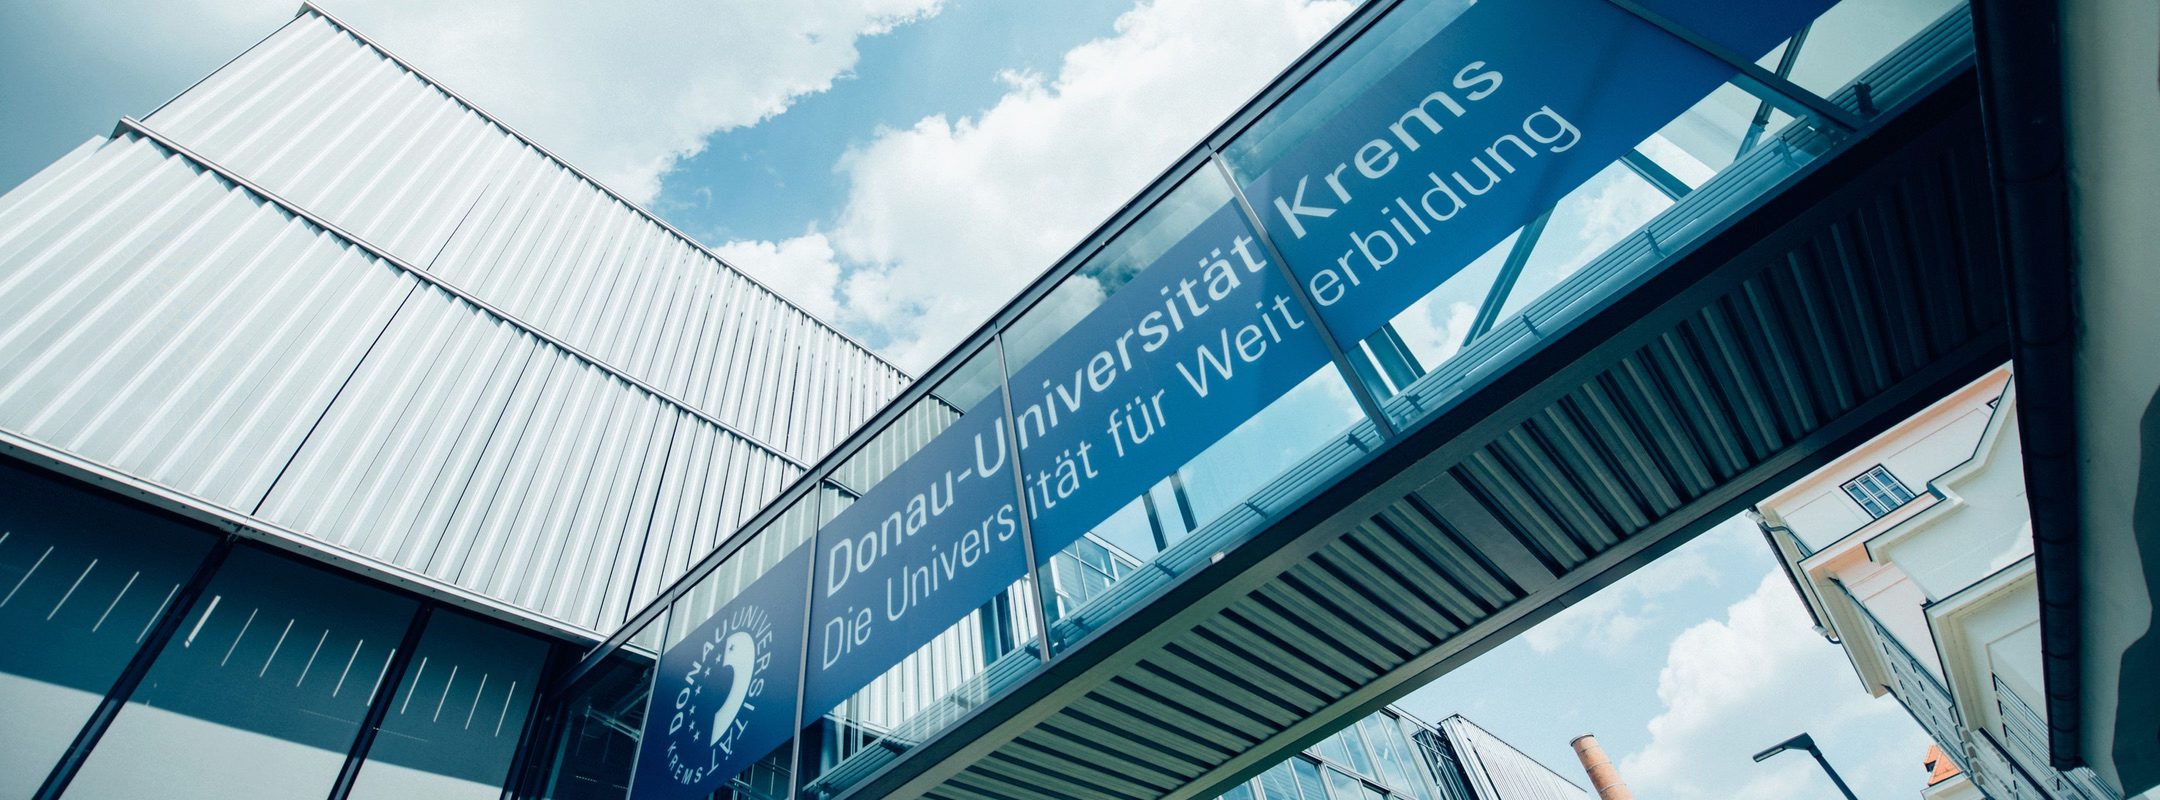 Donau-Universität Krems Thomas Ratka Interview 